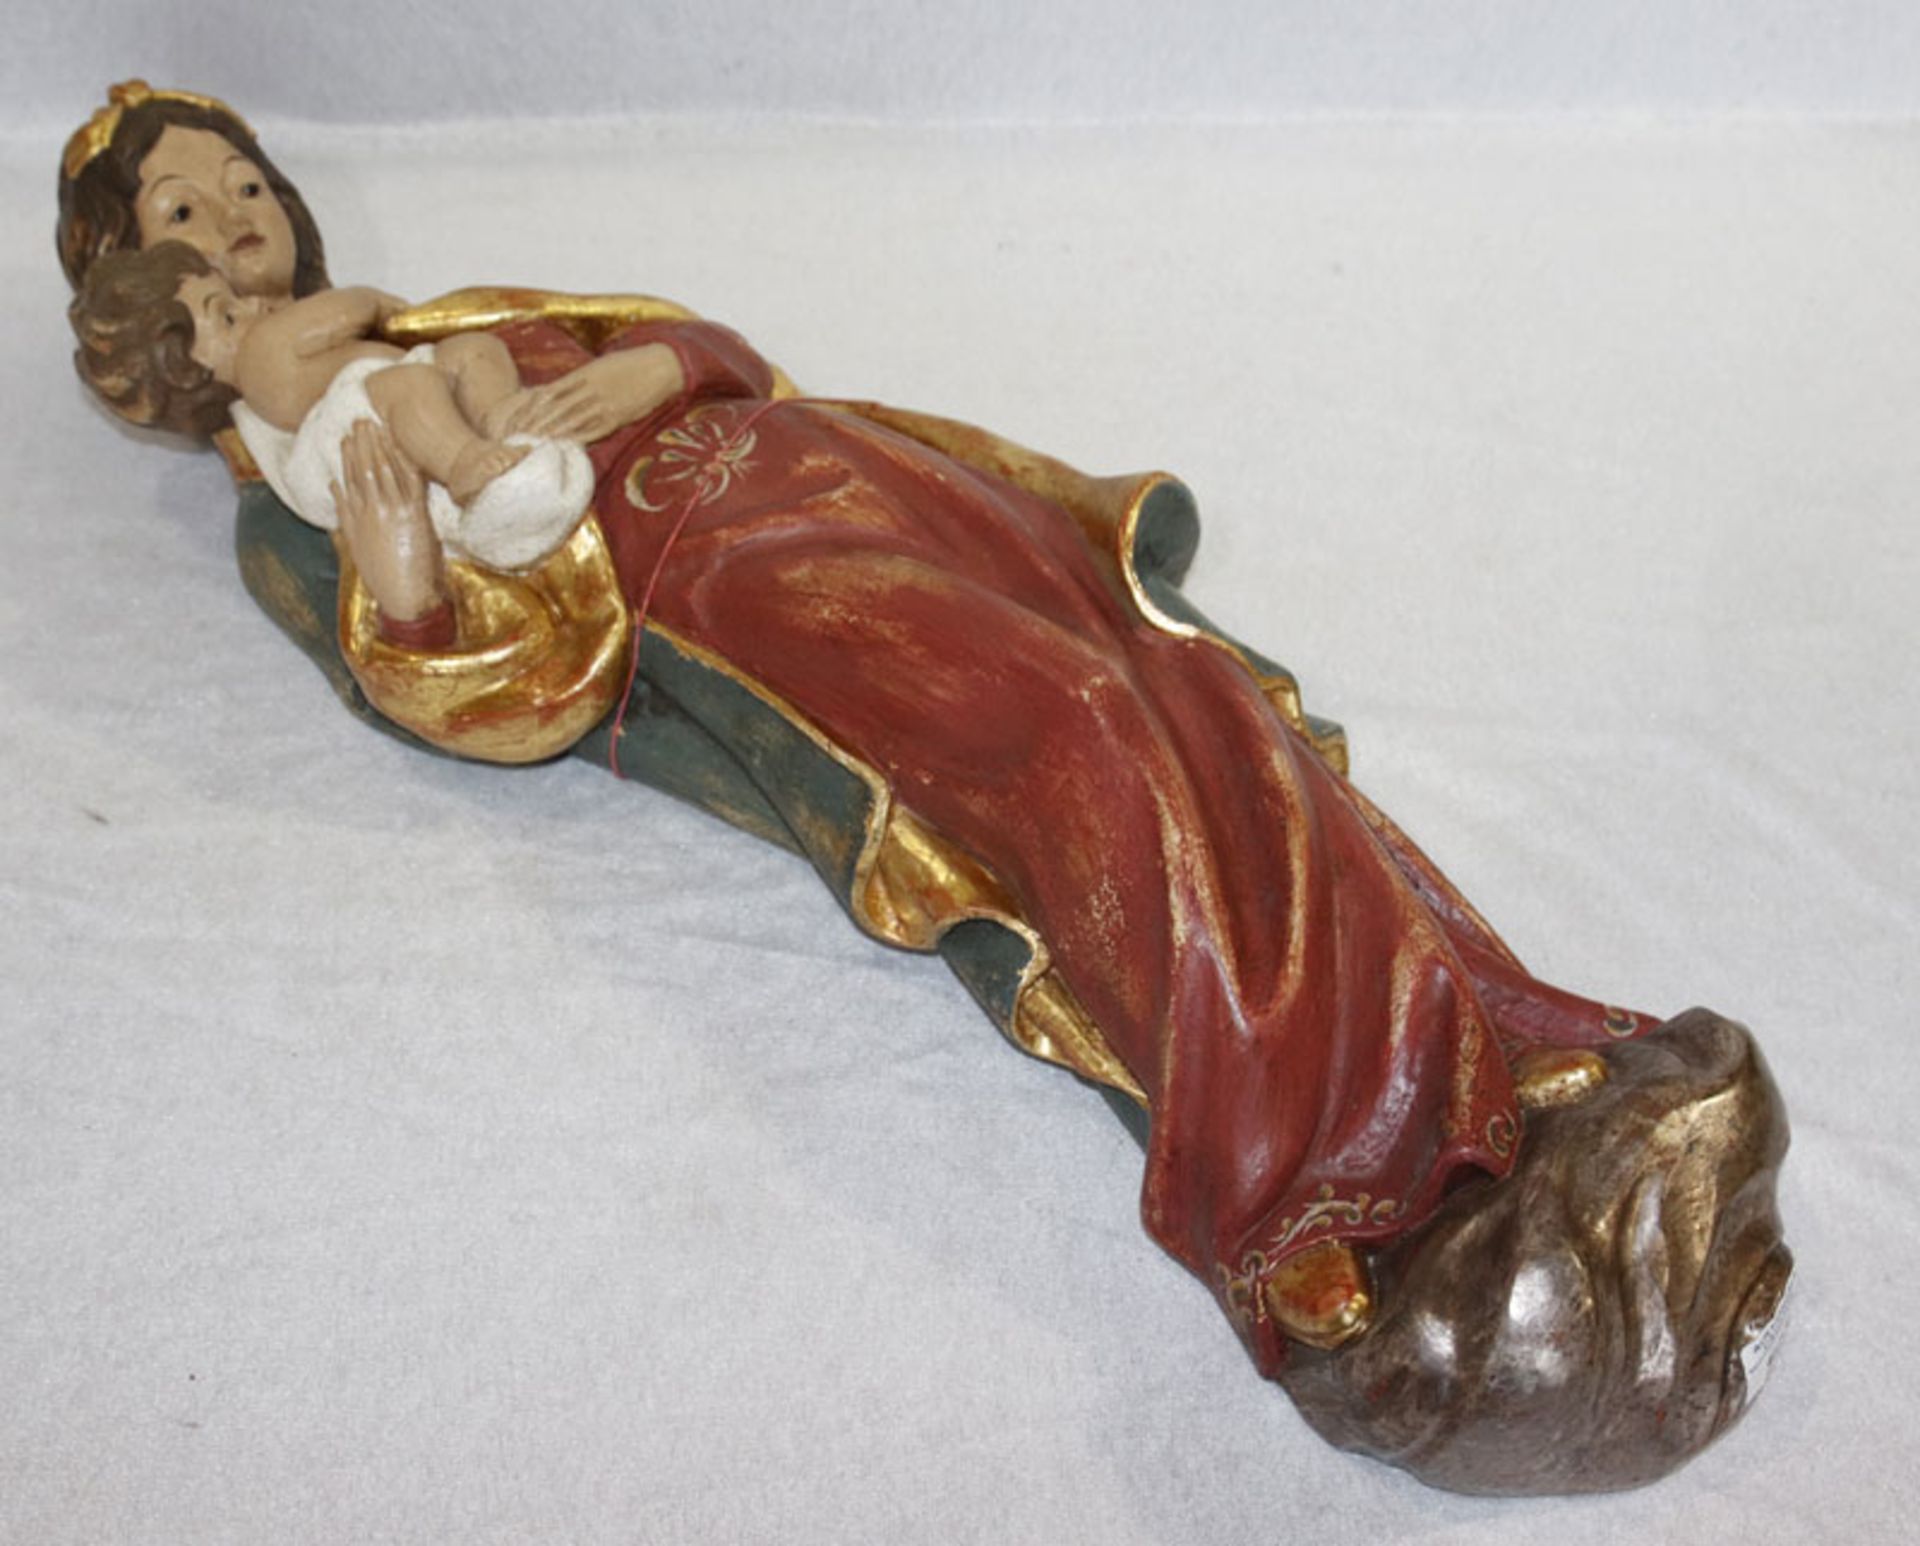 Holz Figurenskulptur 'Werdenfelser Madonna', aus Kiefernholz handgeschnitzt mit echtem Blattgold